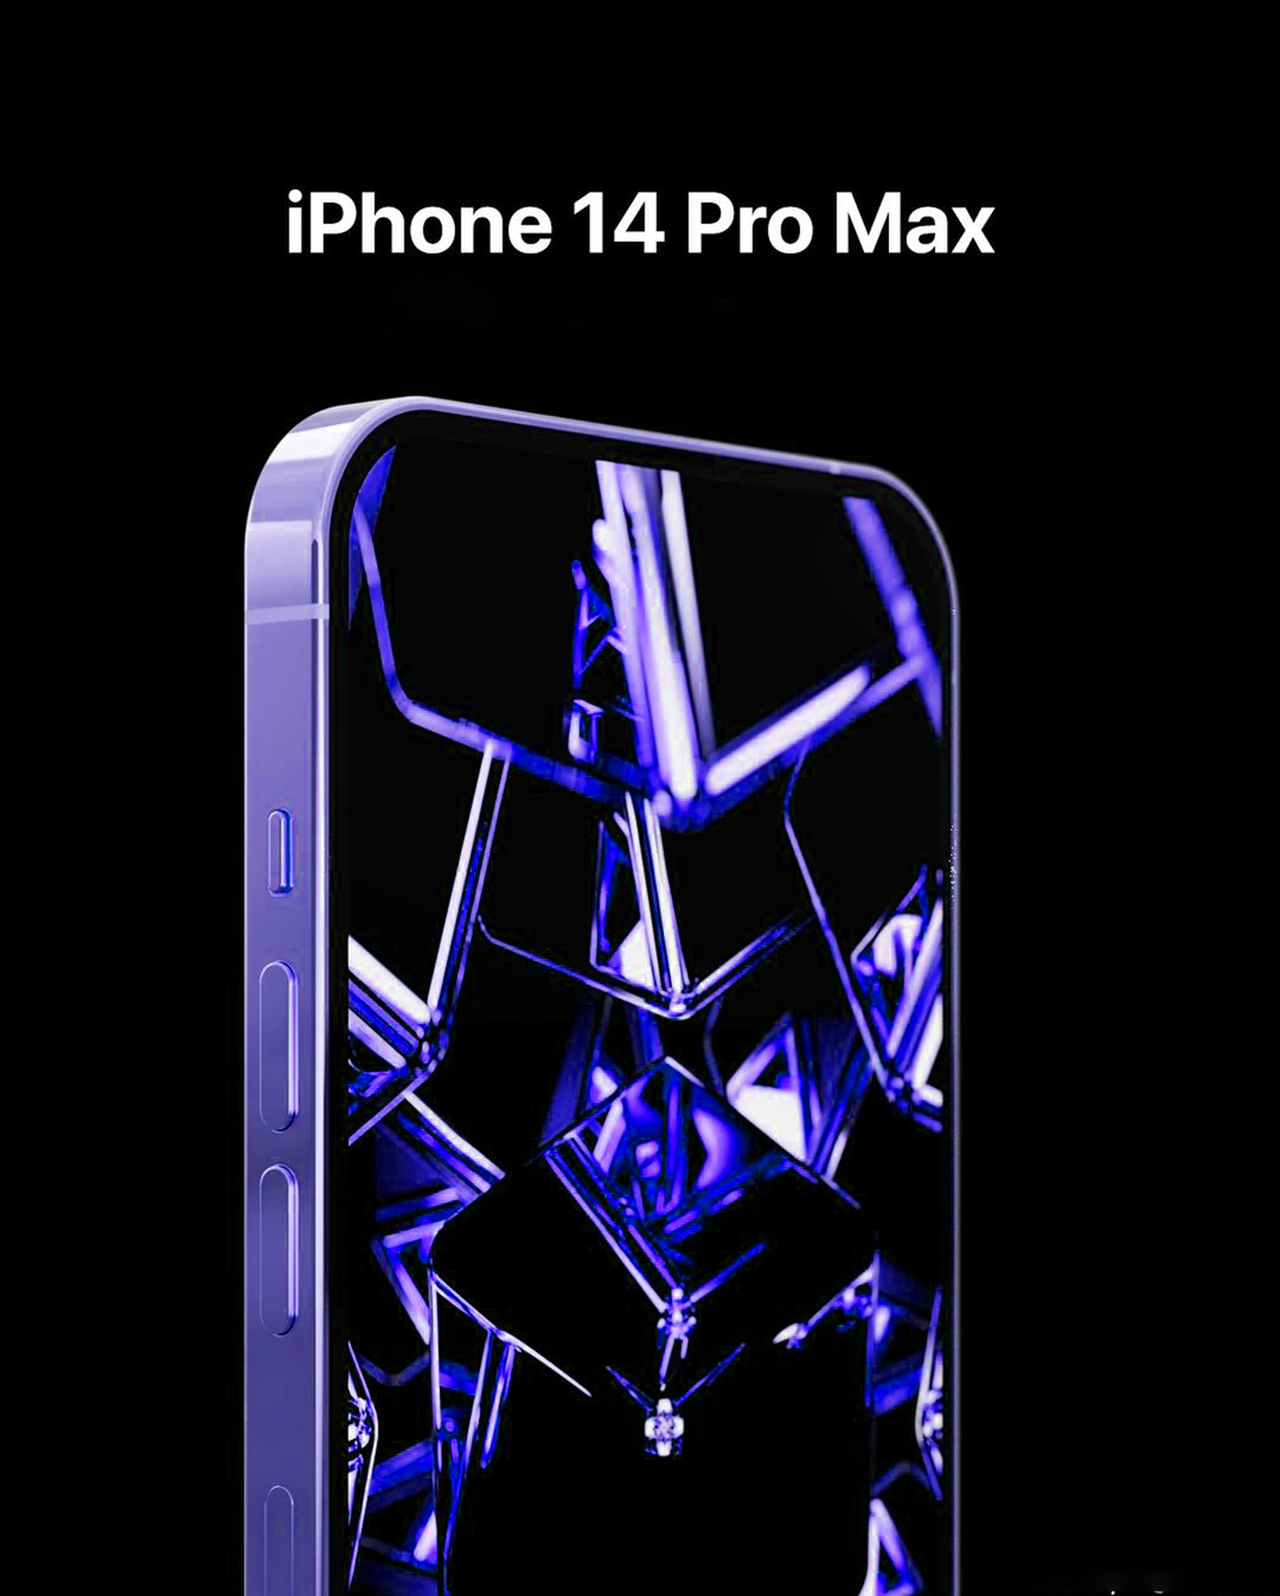 iPhone 14 Pro Max màu Xanh Neon rực rỡ từ bên trong và ngoài, bắt mắt và độc đáo. Đó là lý do tại sao bạn cần xem hình ảnh của nó để thấy được cảm giác đặc biệt mà nó mang đến cho bạn.